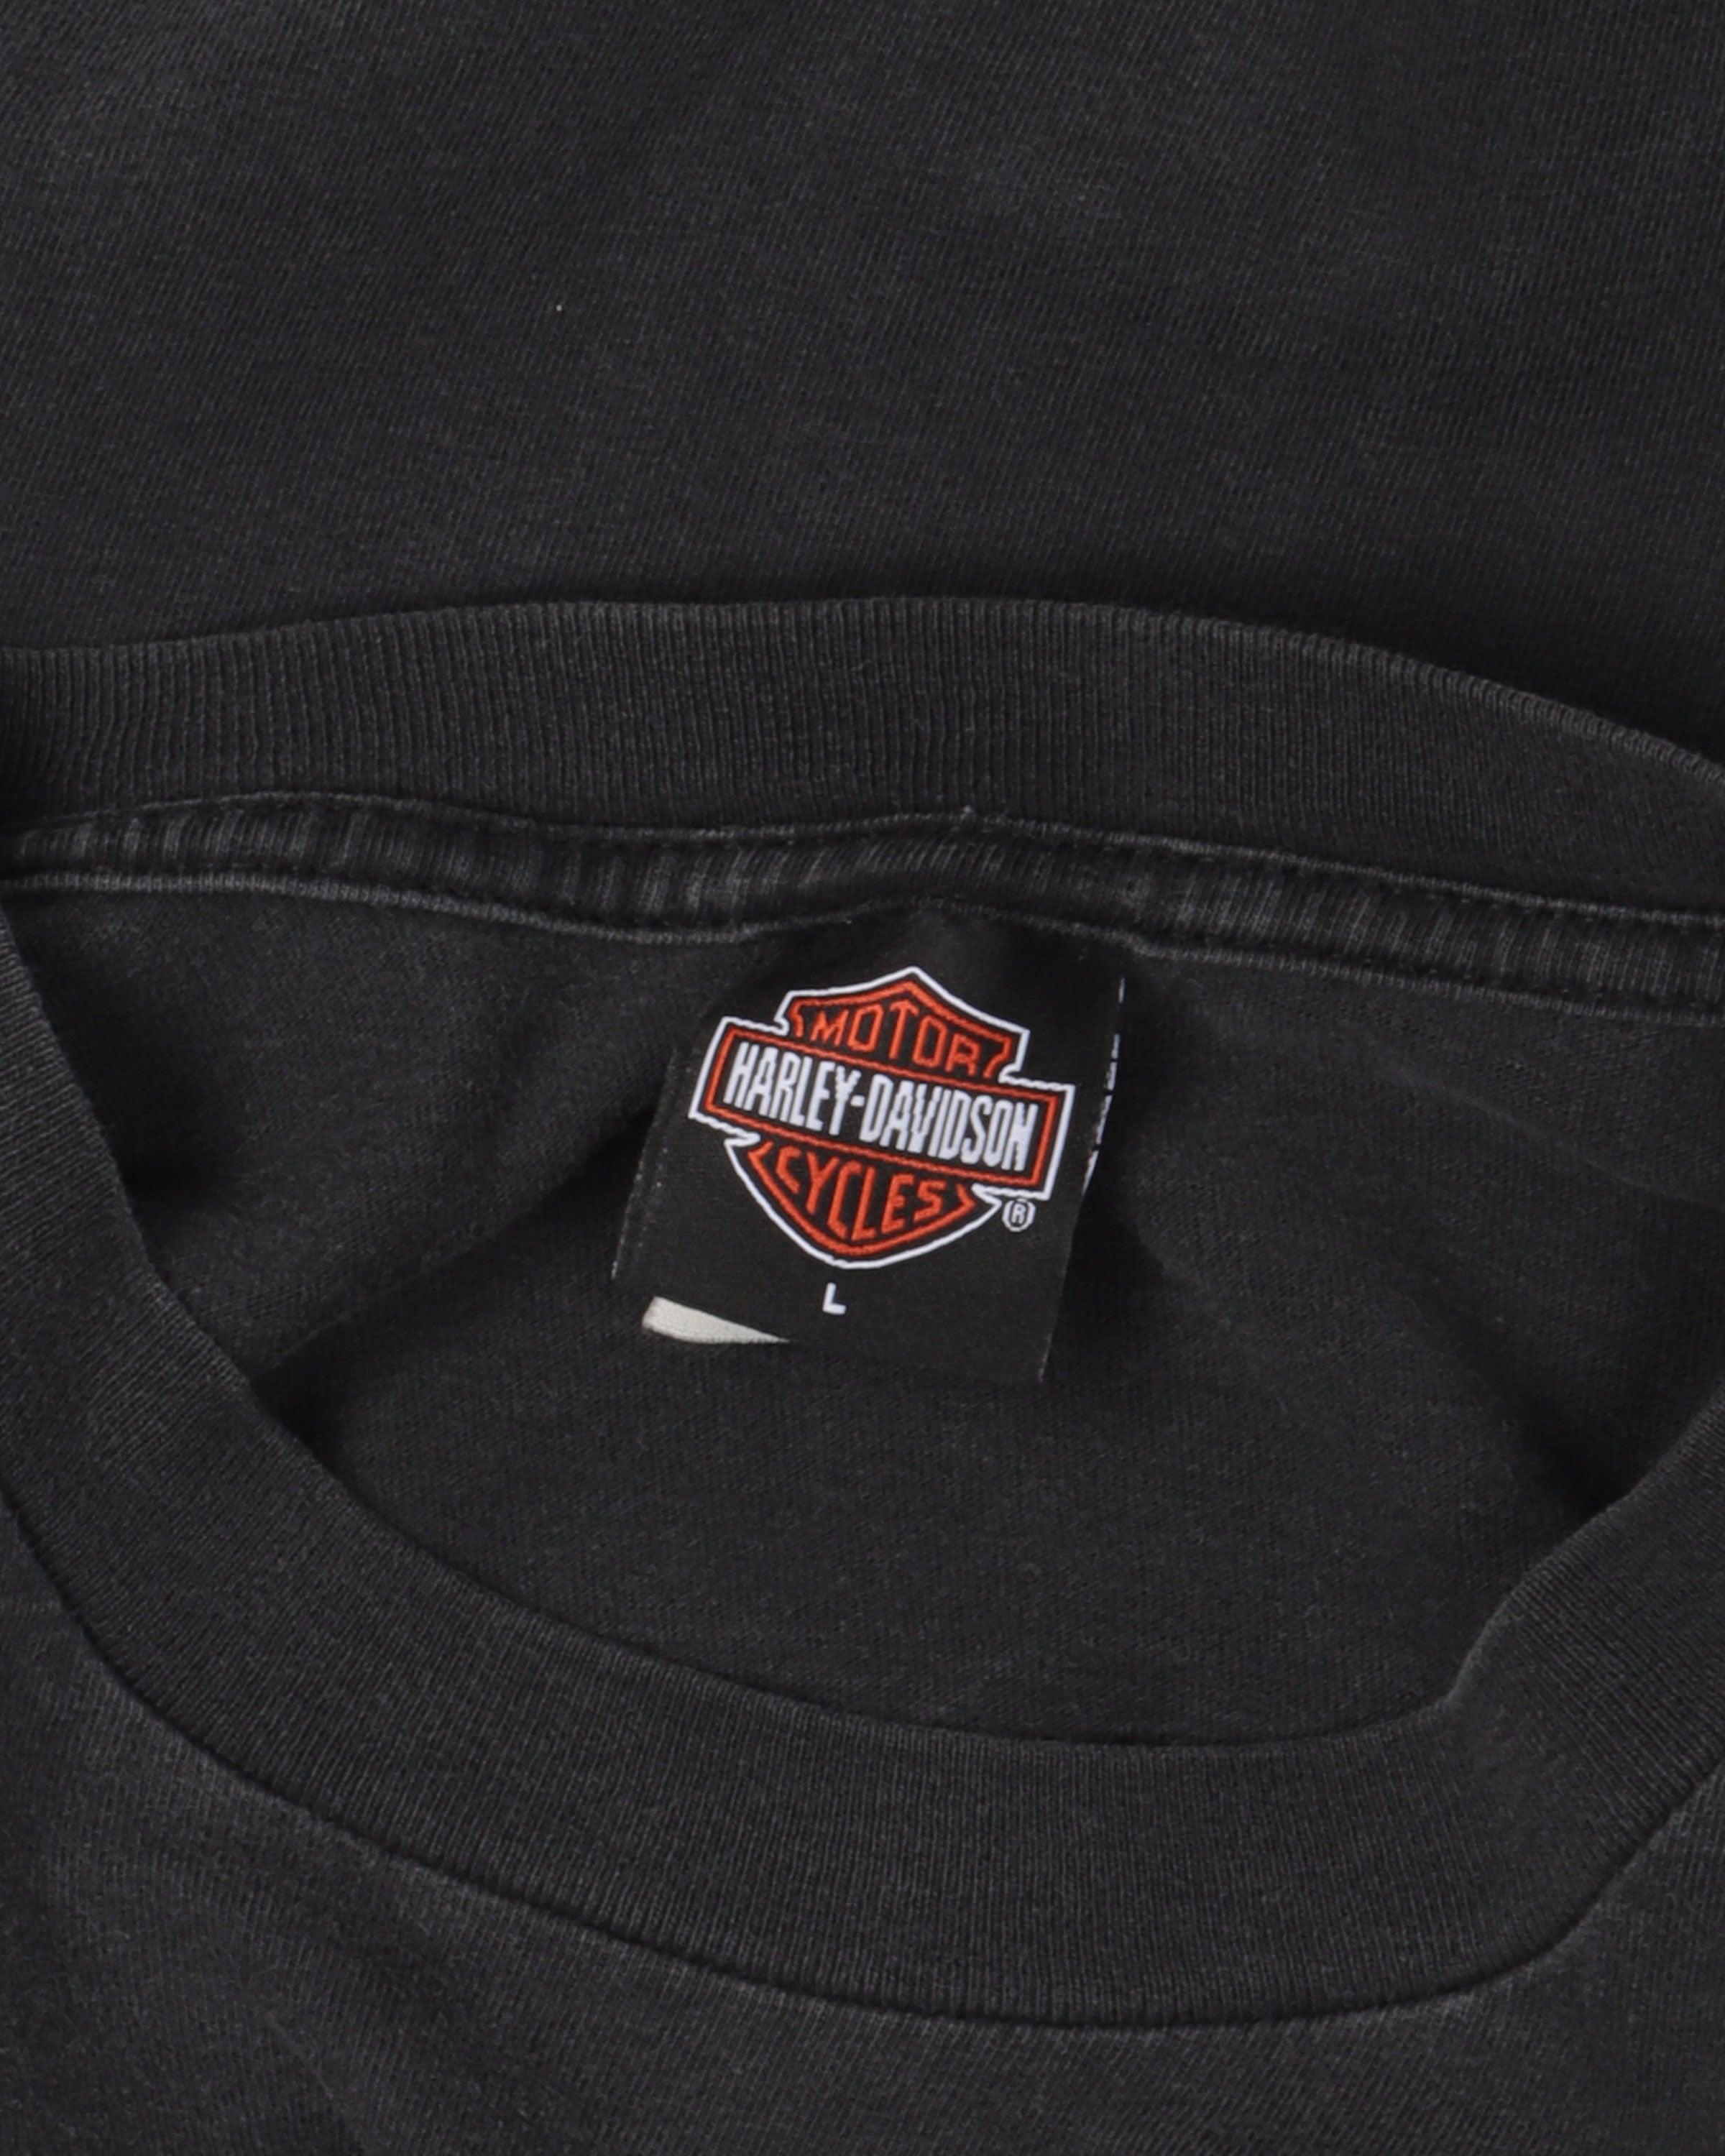 Harley Davidson Long Sleeve T-Shirt